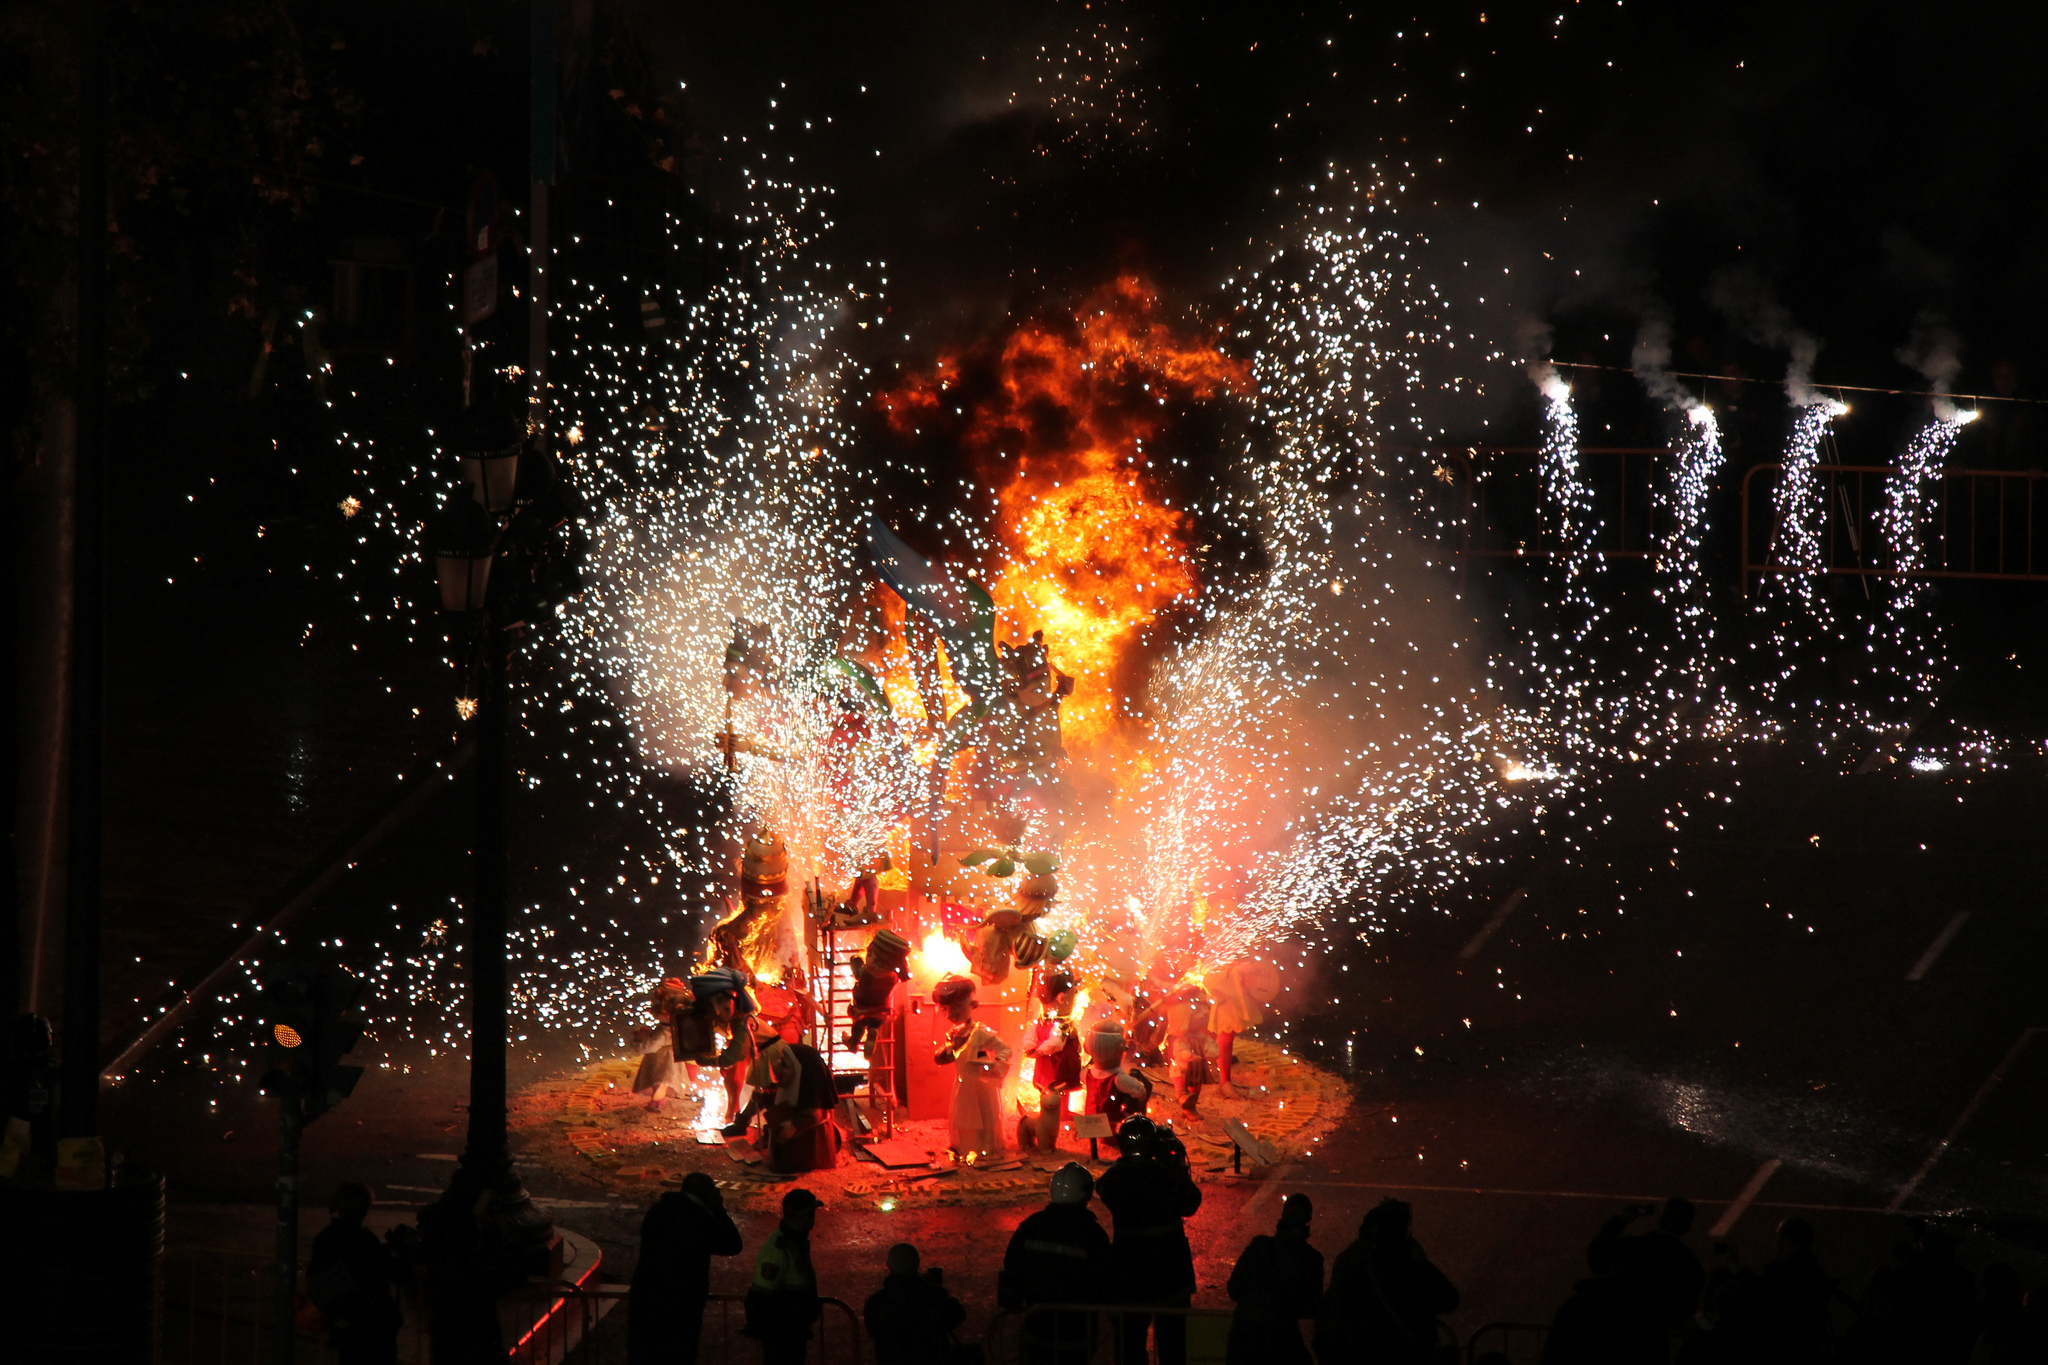 Фальяс - праздник в валенсии (15-20 марта) в завершении которого сжигаются огромные куклы из папье-маше